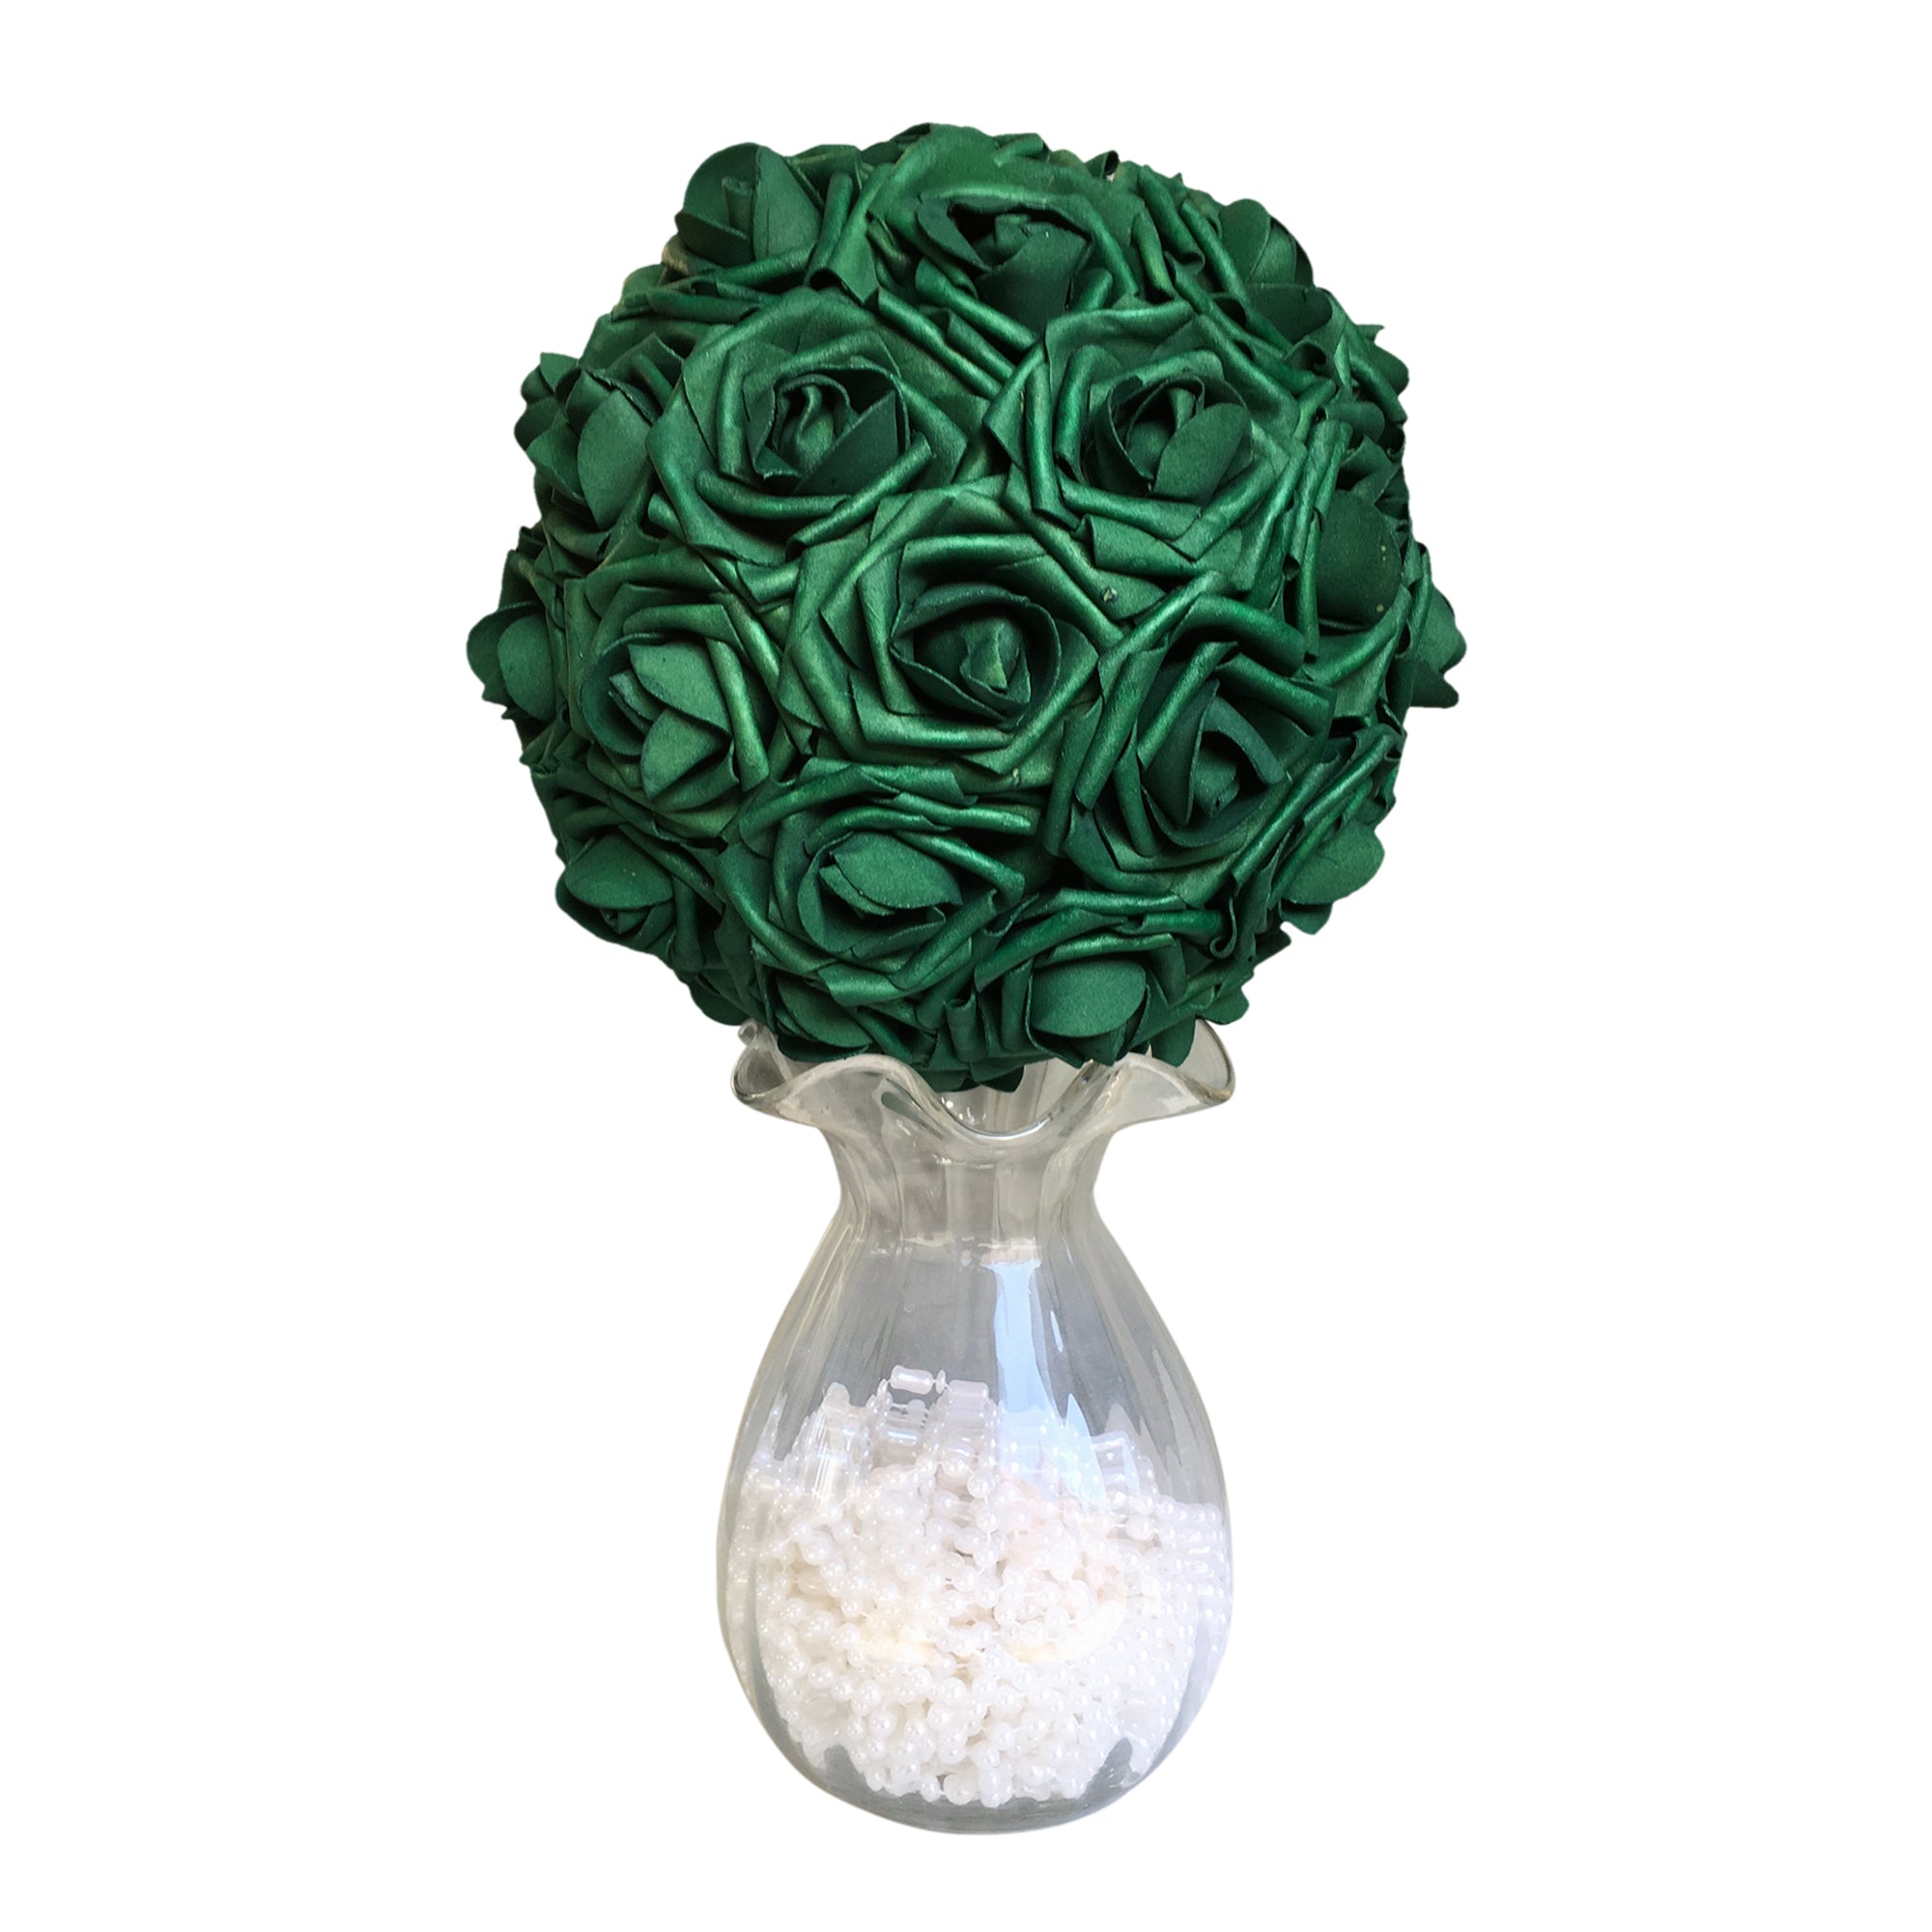 emerlad green flower ball wedding centerpieces